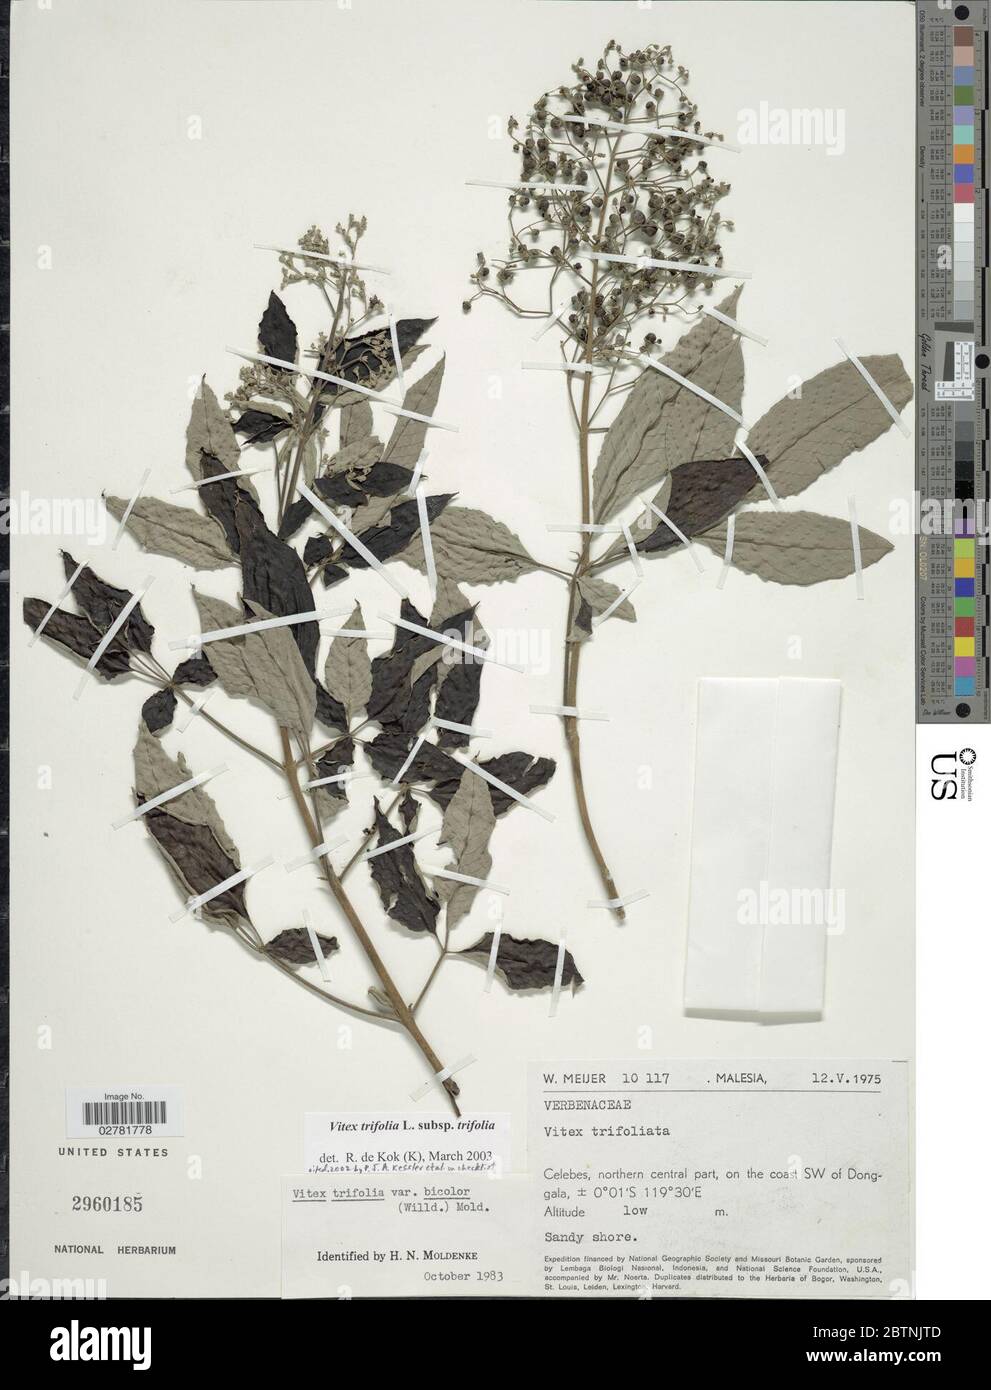 Vitex trifolia subsp trifolia L. Stock Photo